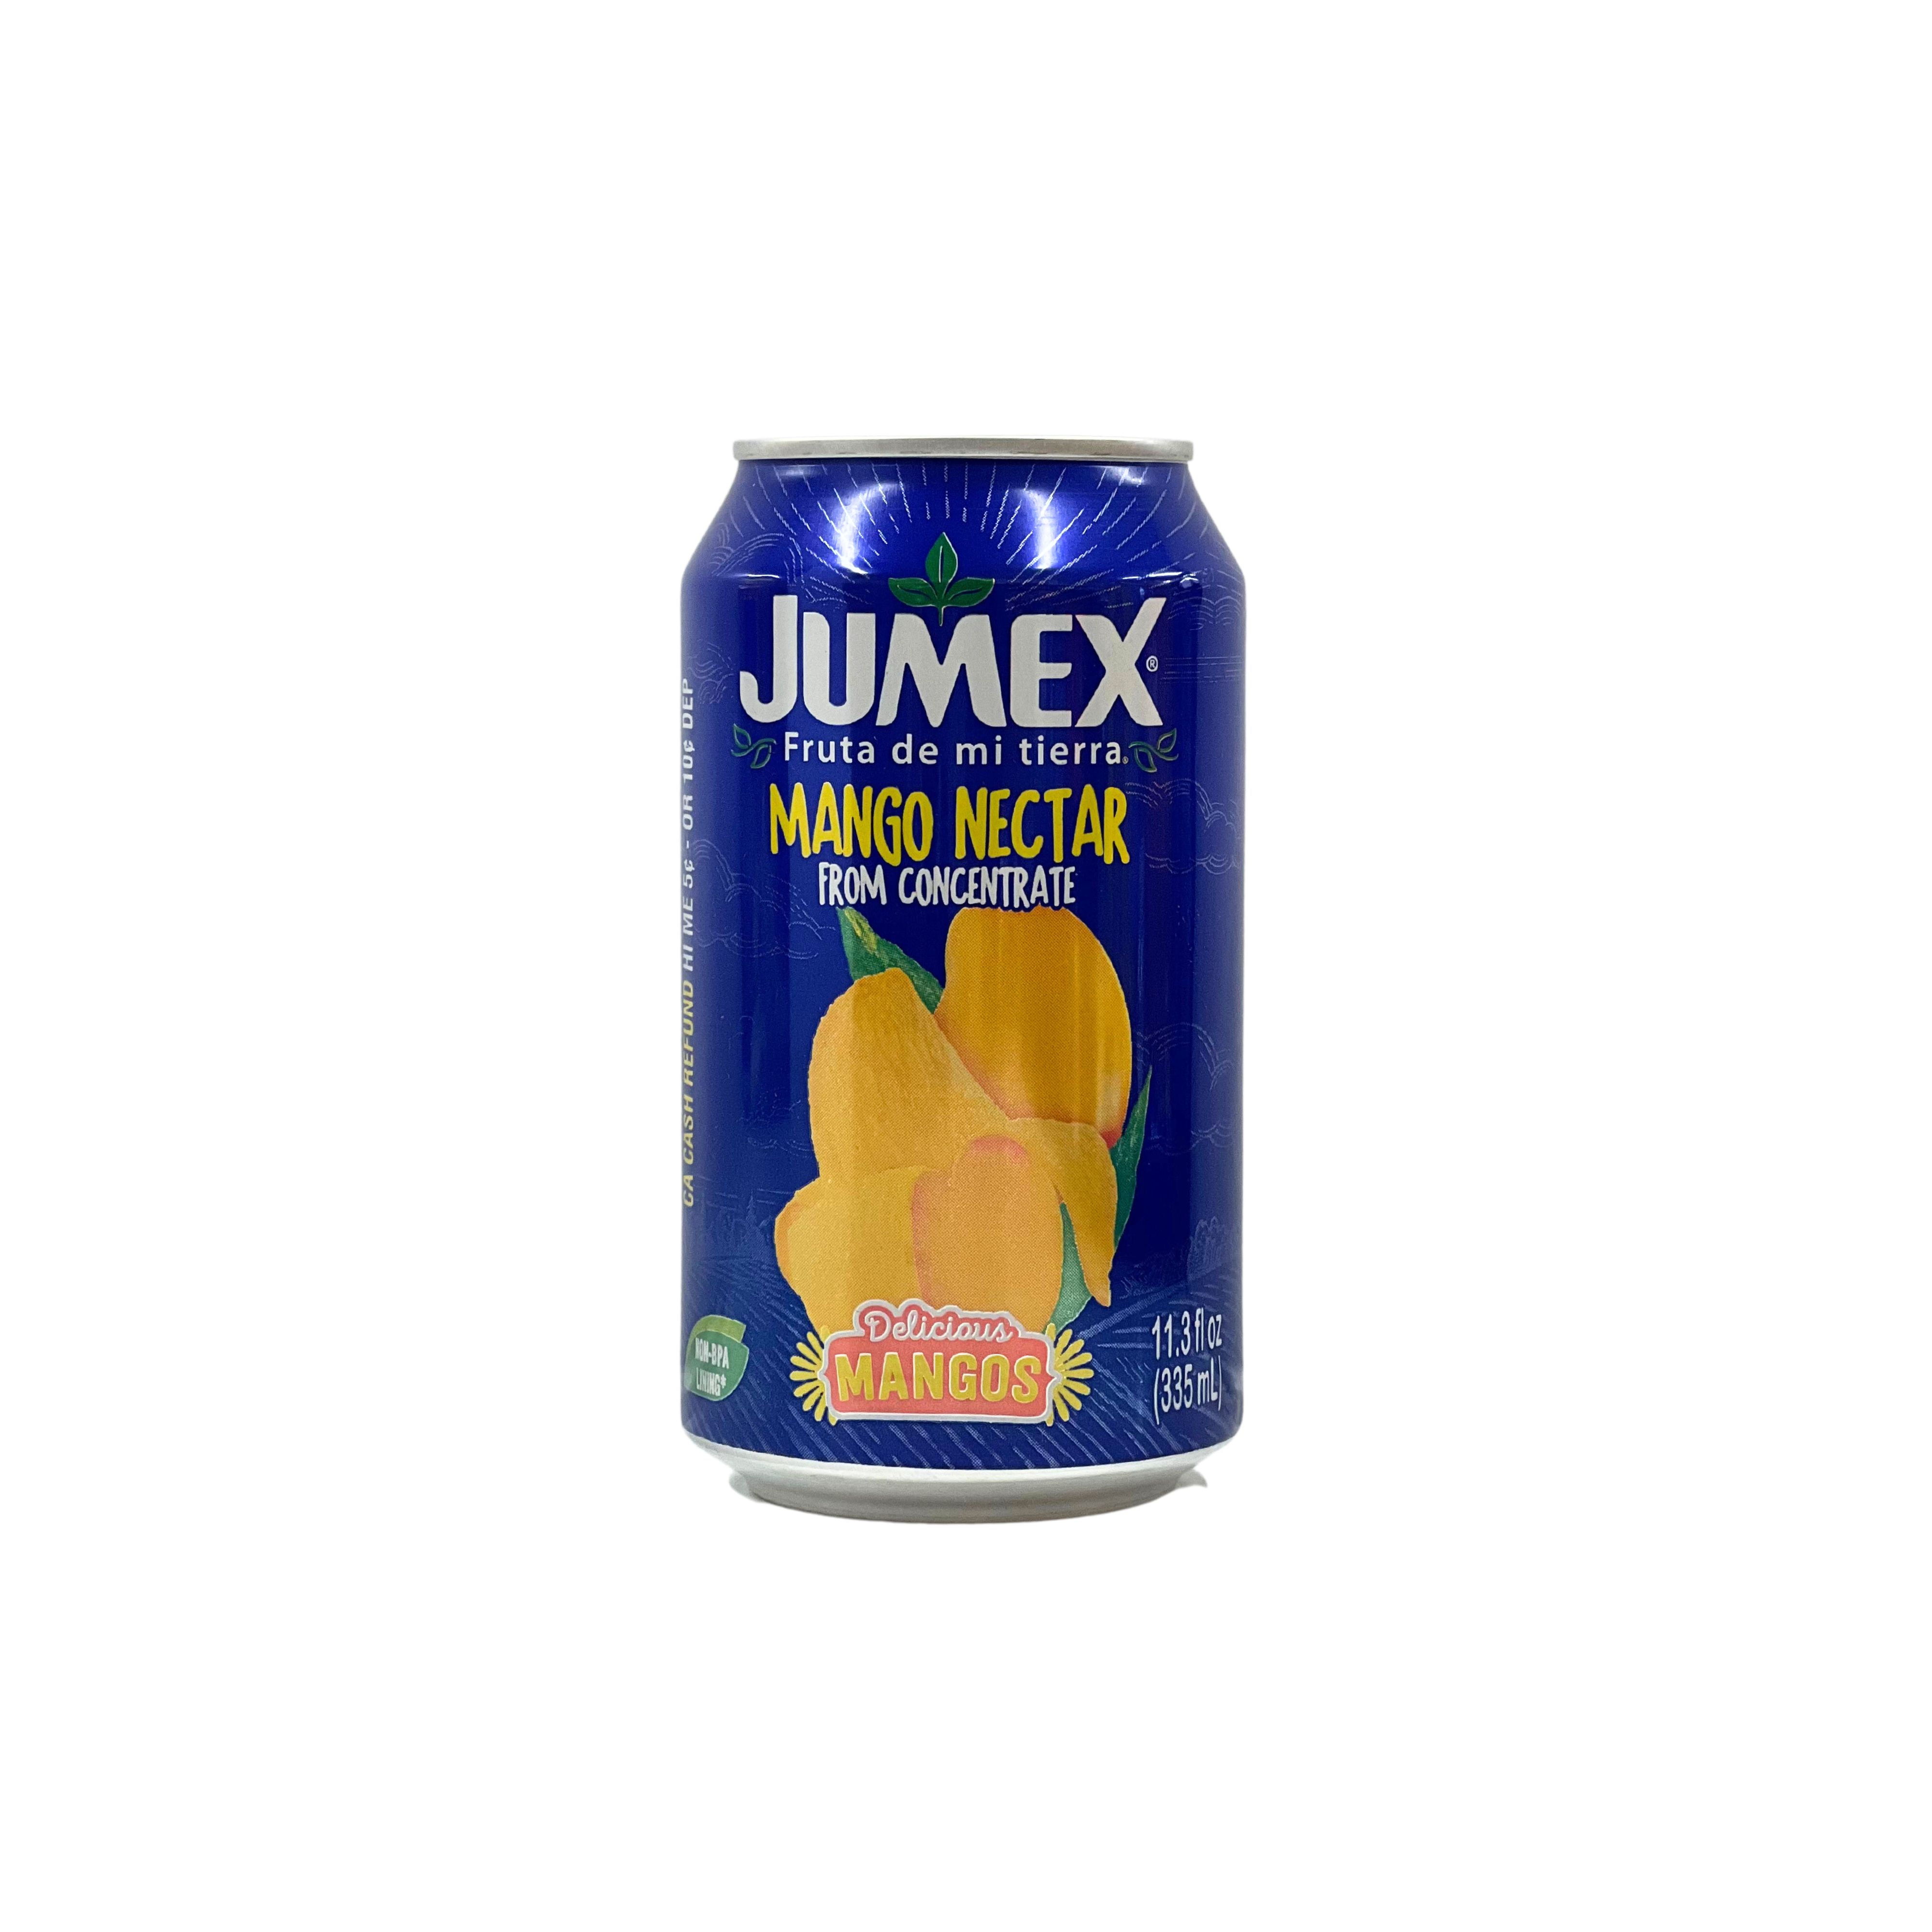 Jumex Mango Nectar 335ml